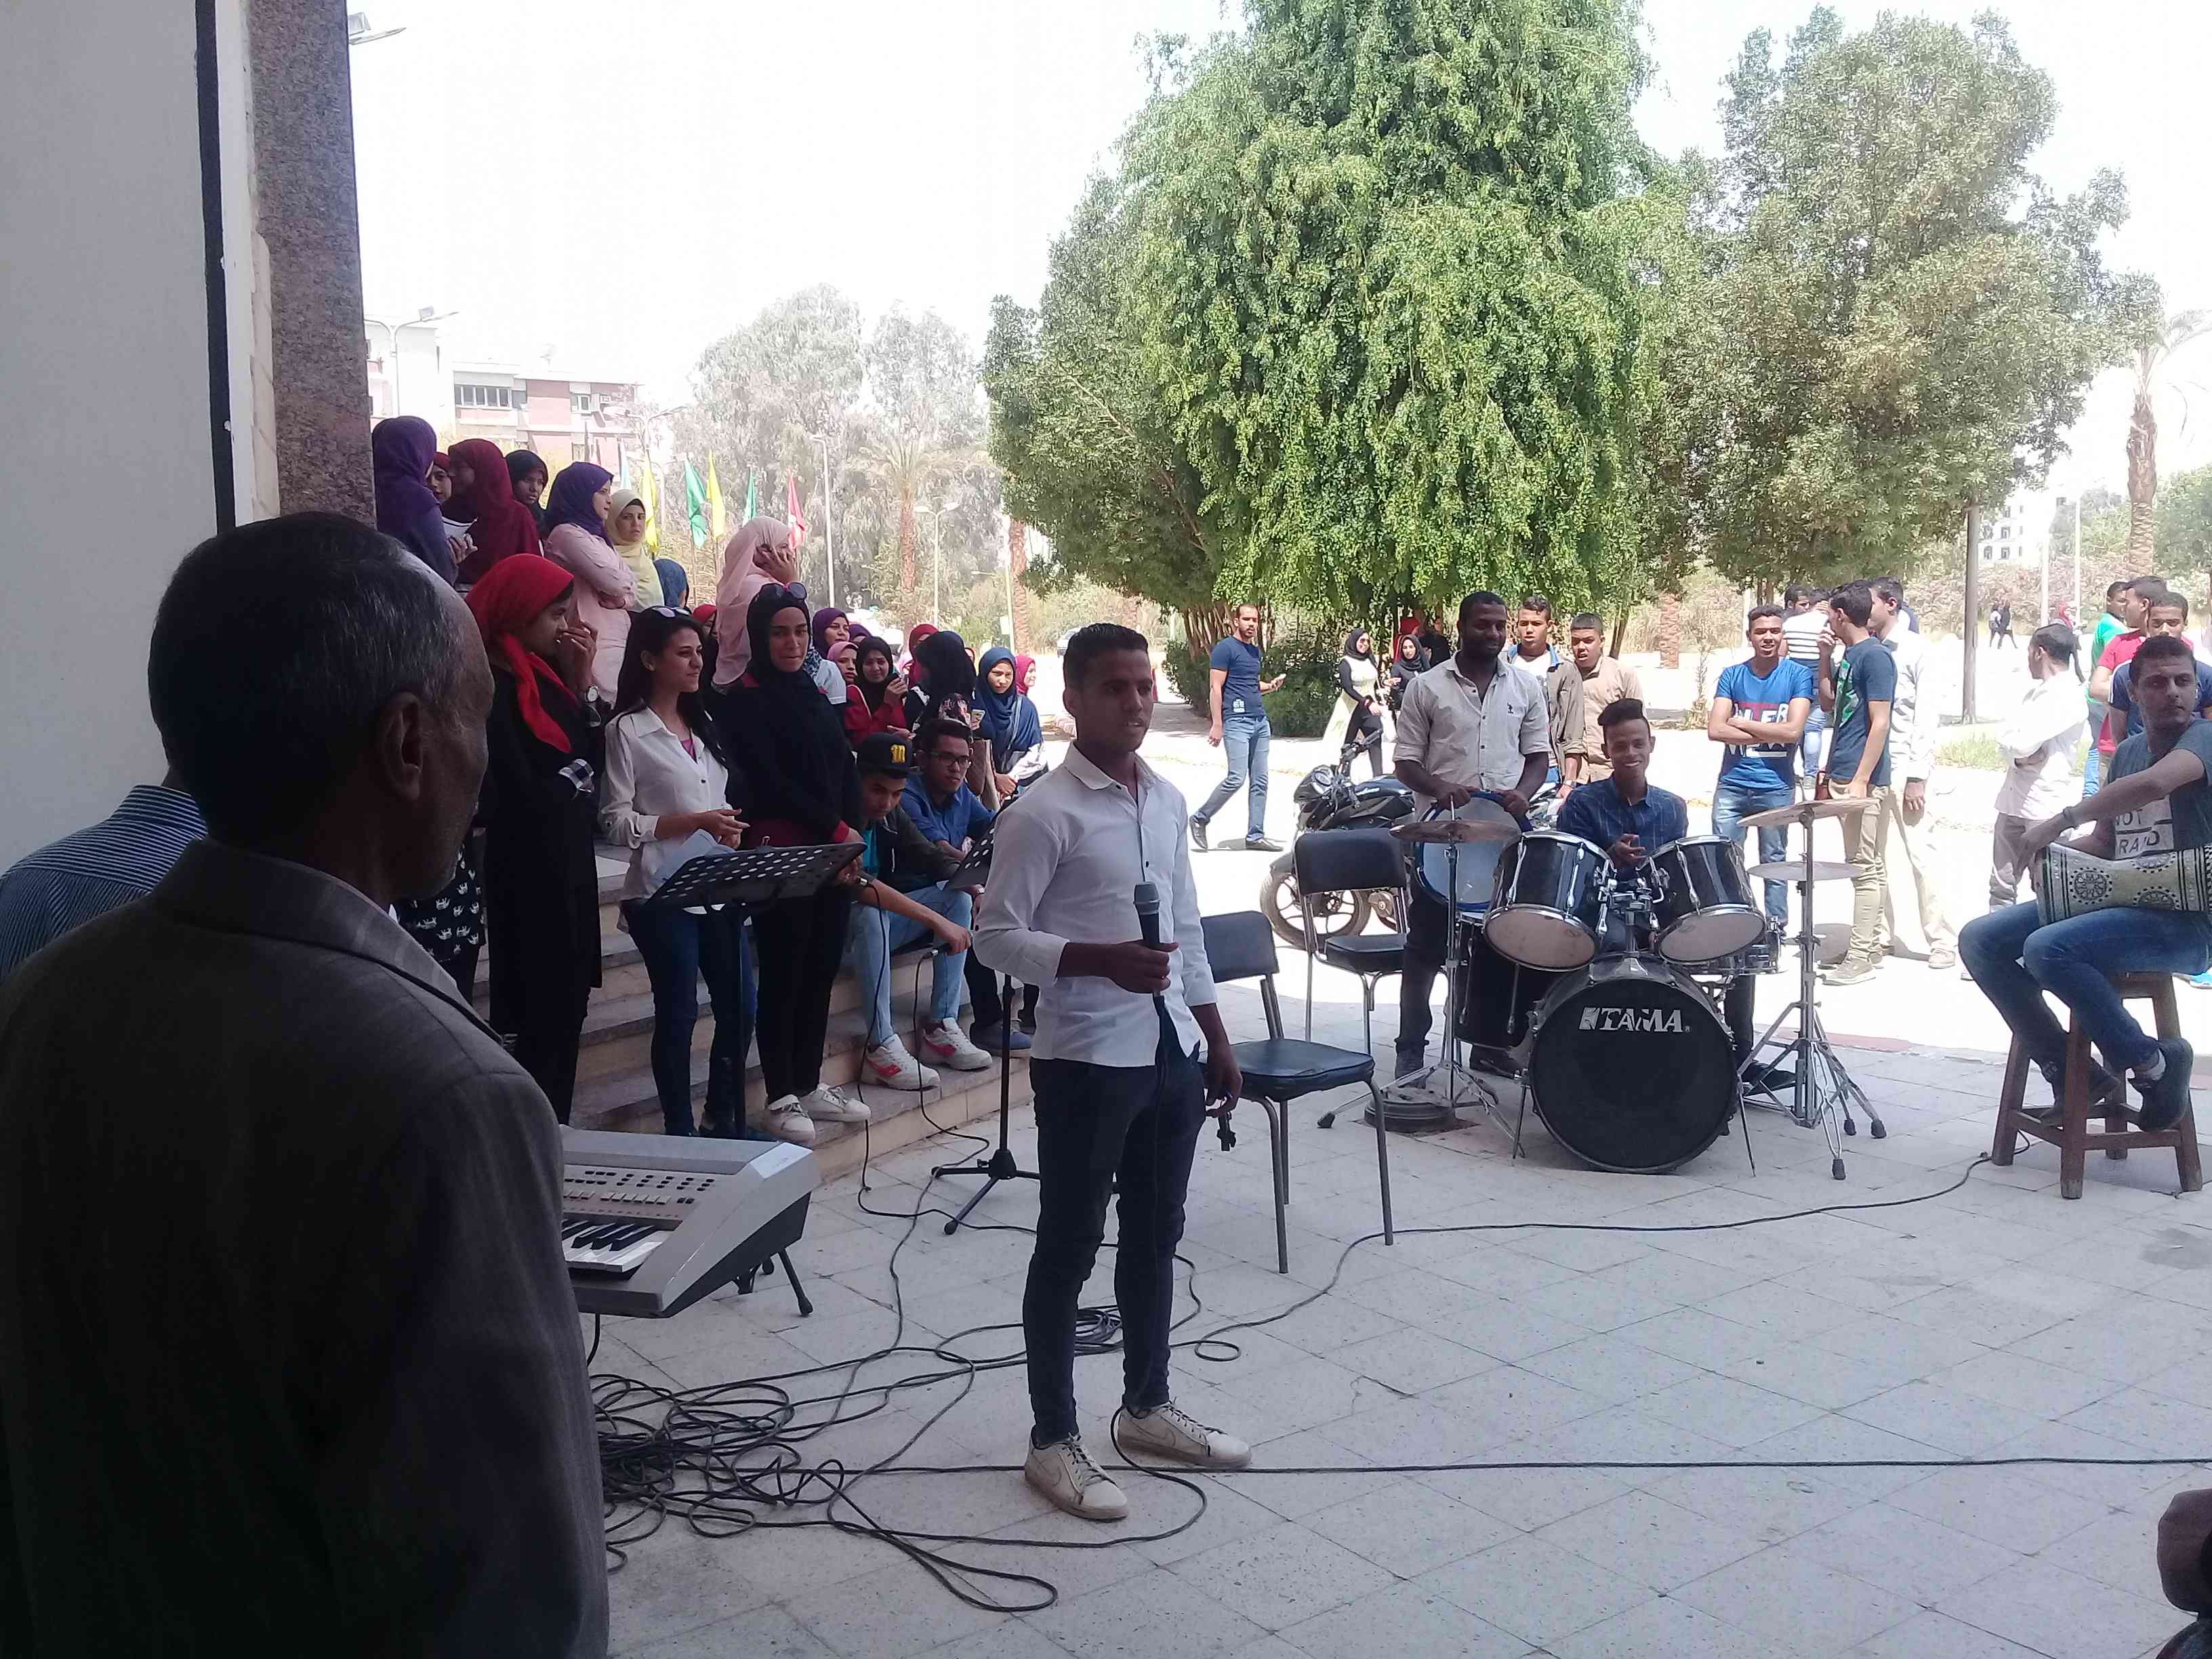 عروض فنية بجامعة جنوب الوادى للاحتفال بعيد تحرير سيناء